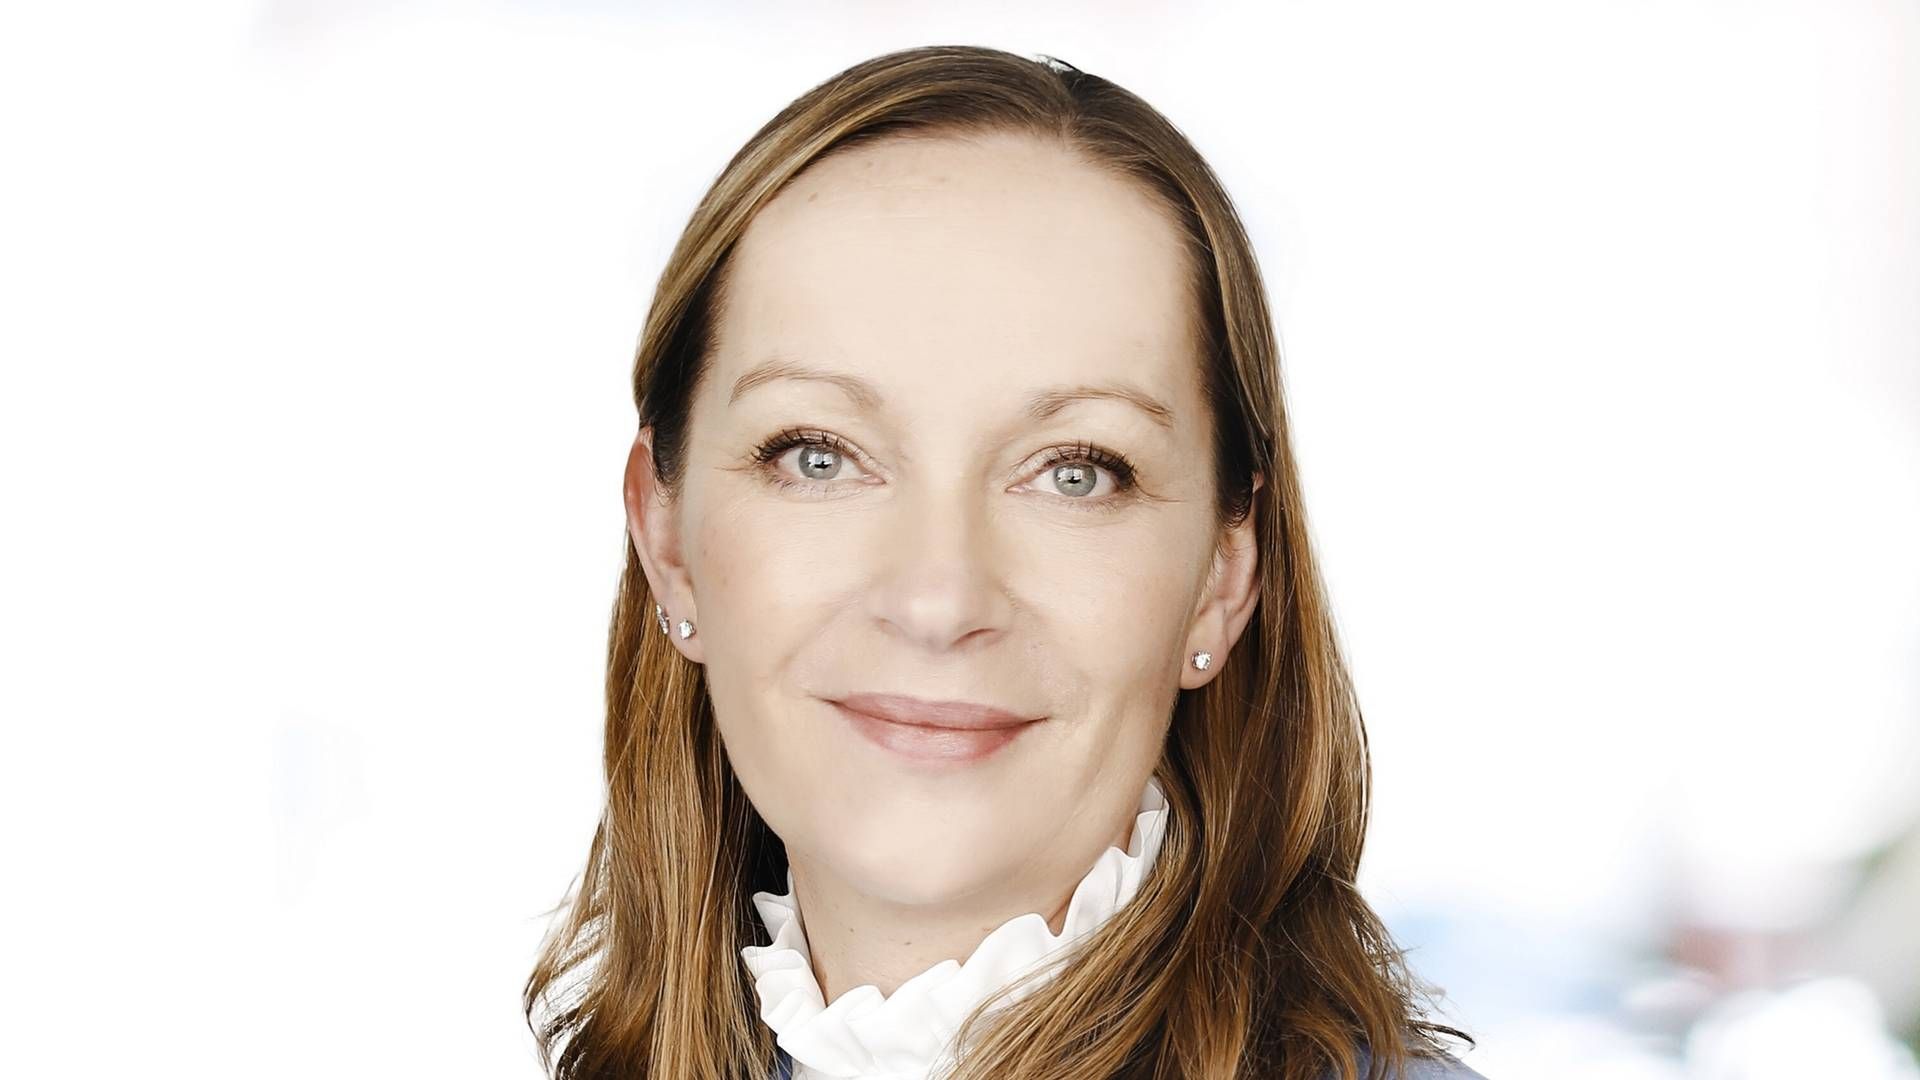 Emilie Wedell-Wedellsborg er ny chef for Kommunikation og Bæredygtighed i Alm. Brand. | Foto: PR / Alm Brand